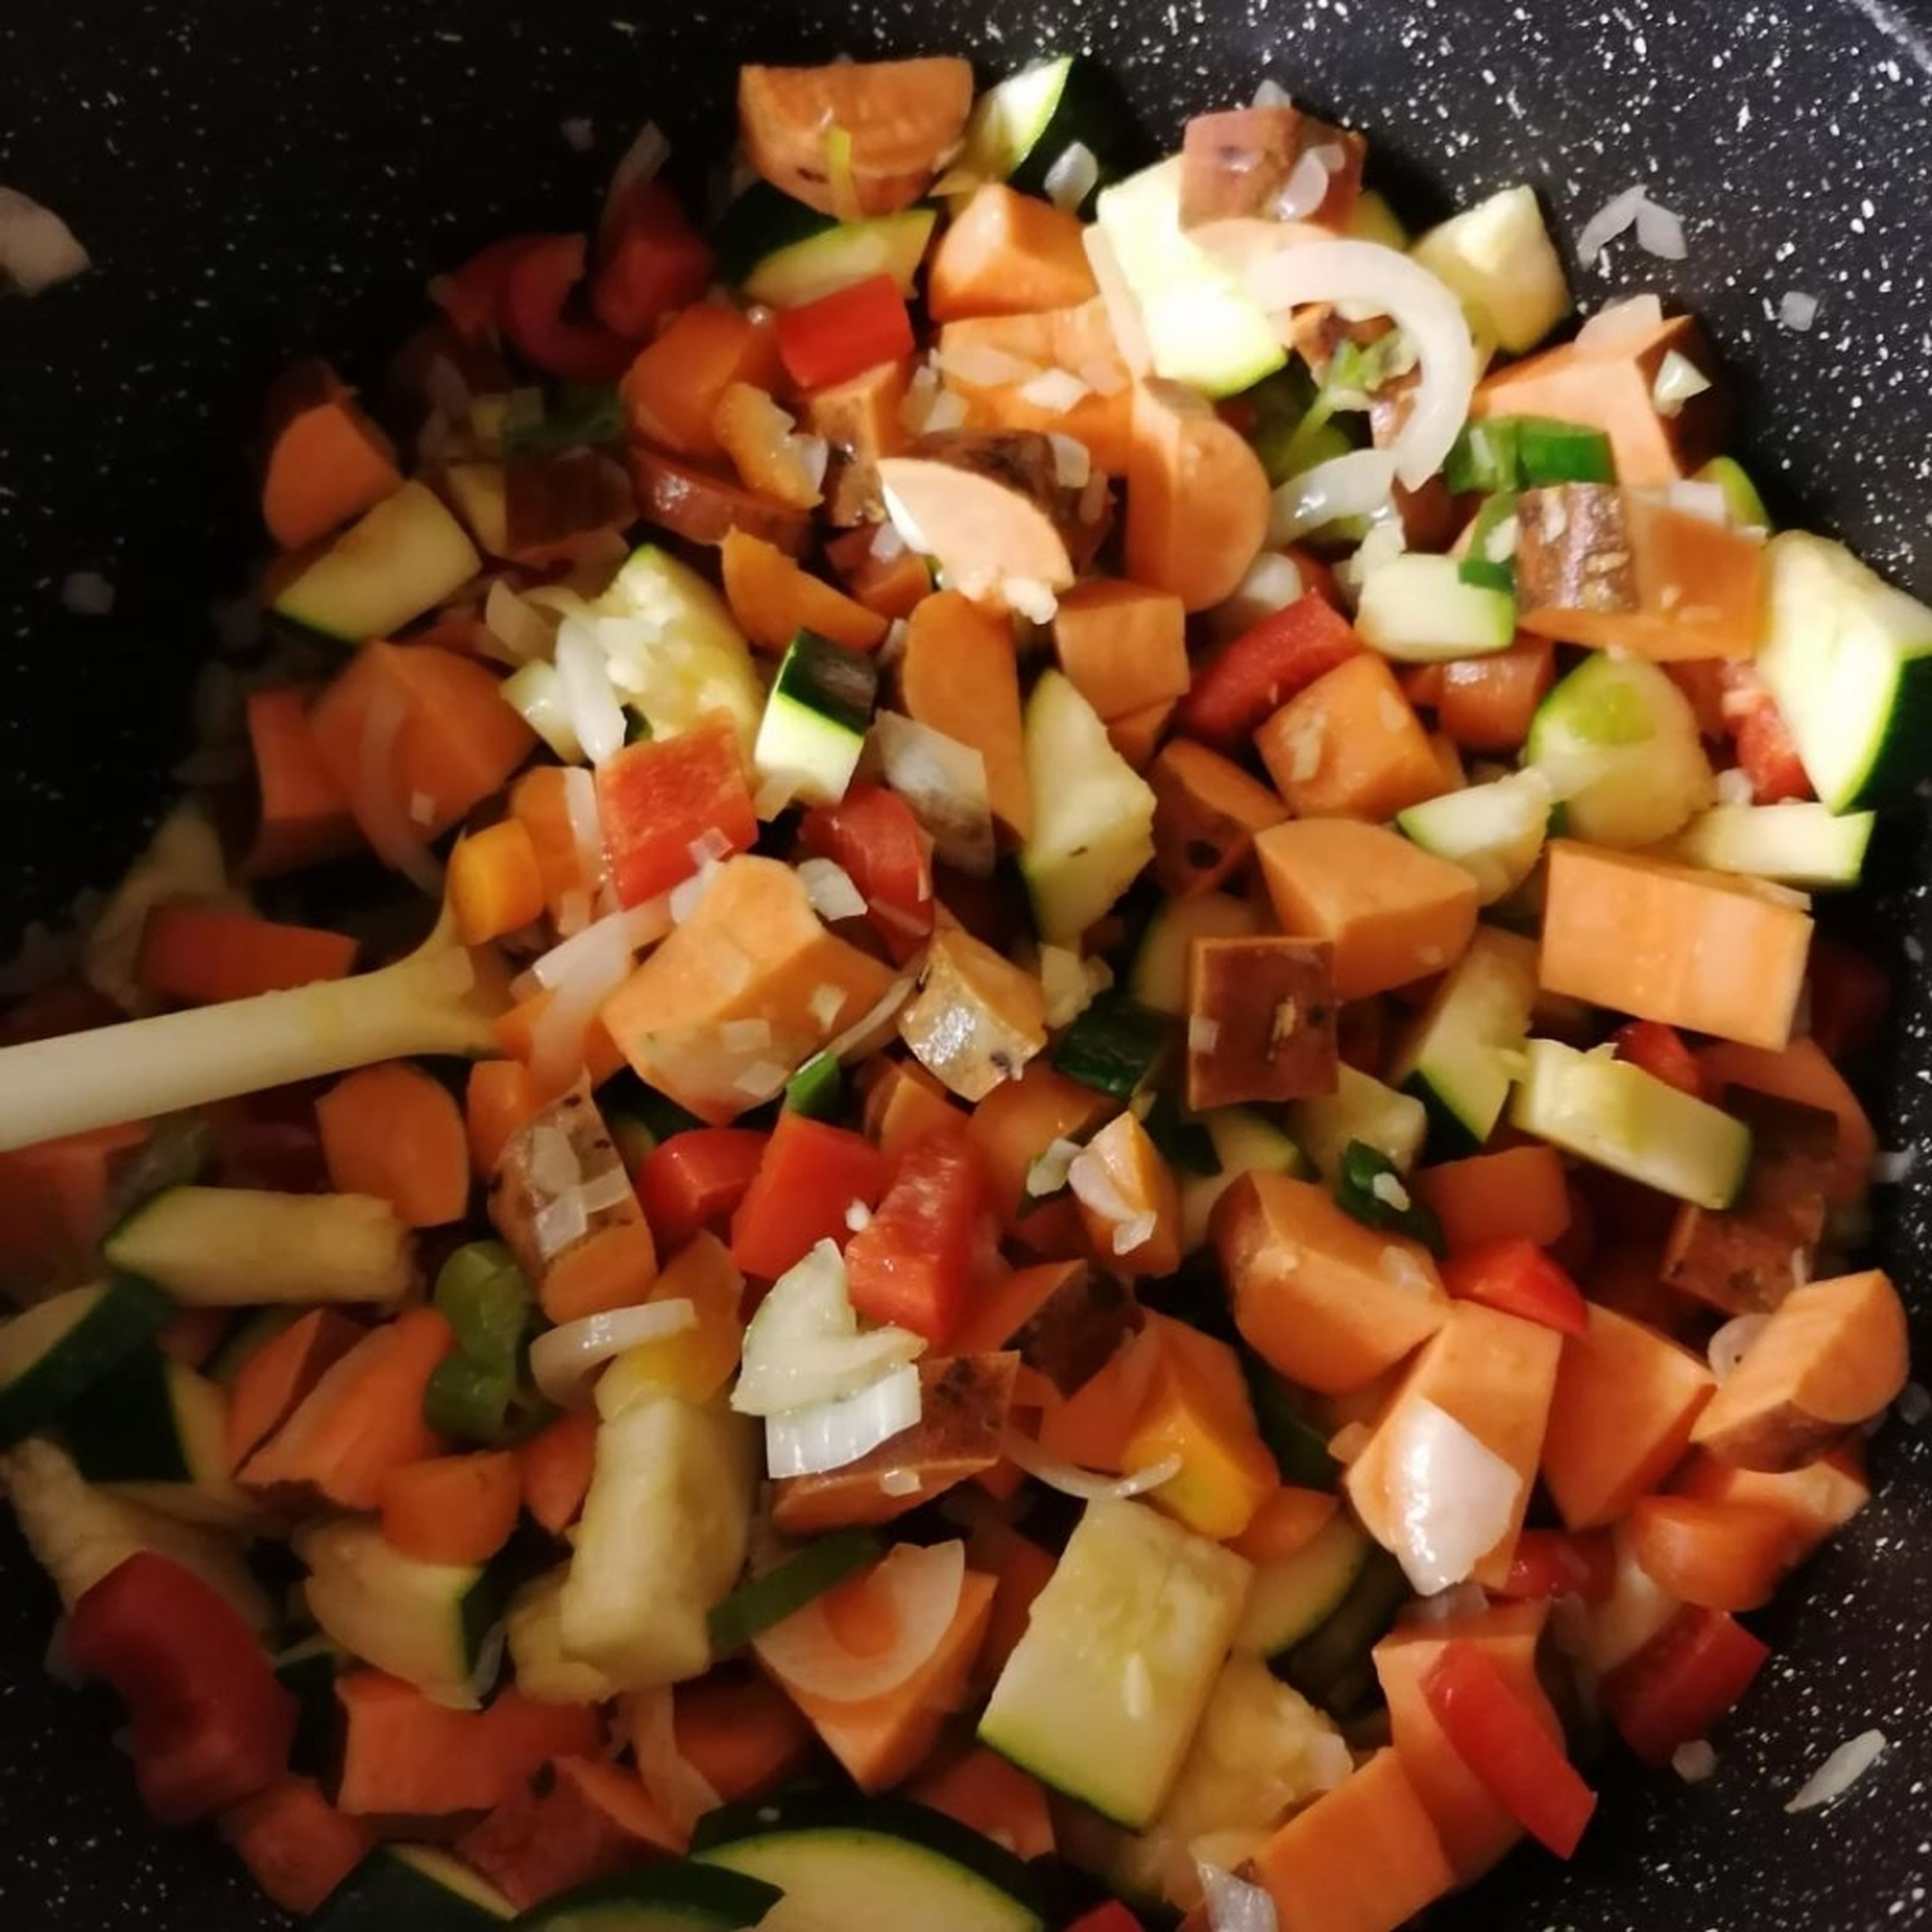 Öl erhitzen, Zwiebeln, Frühlingszwiebel, Karotten und Knoblauch kurz anbraten, dann das andere Gemüse dazu geben und einige Minuten andünsten. Mit Salz und Pfeffer würzen.